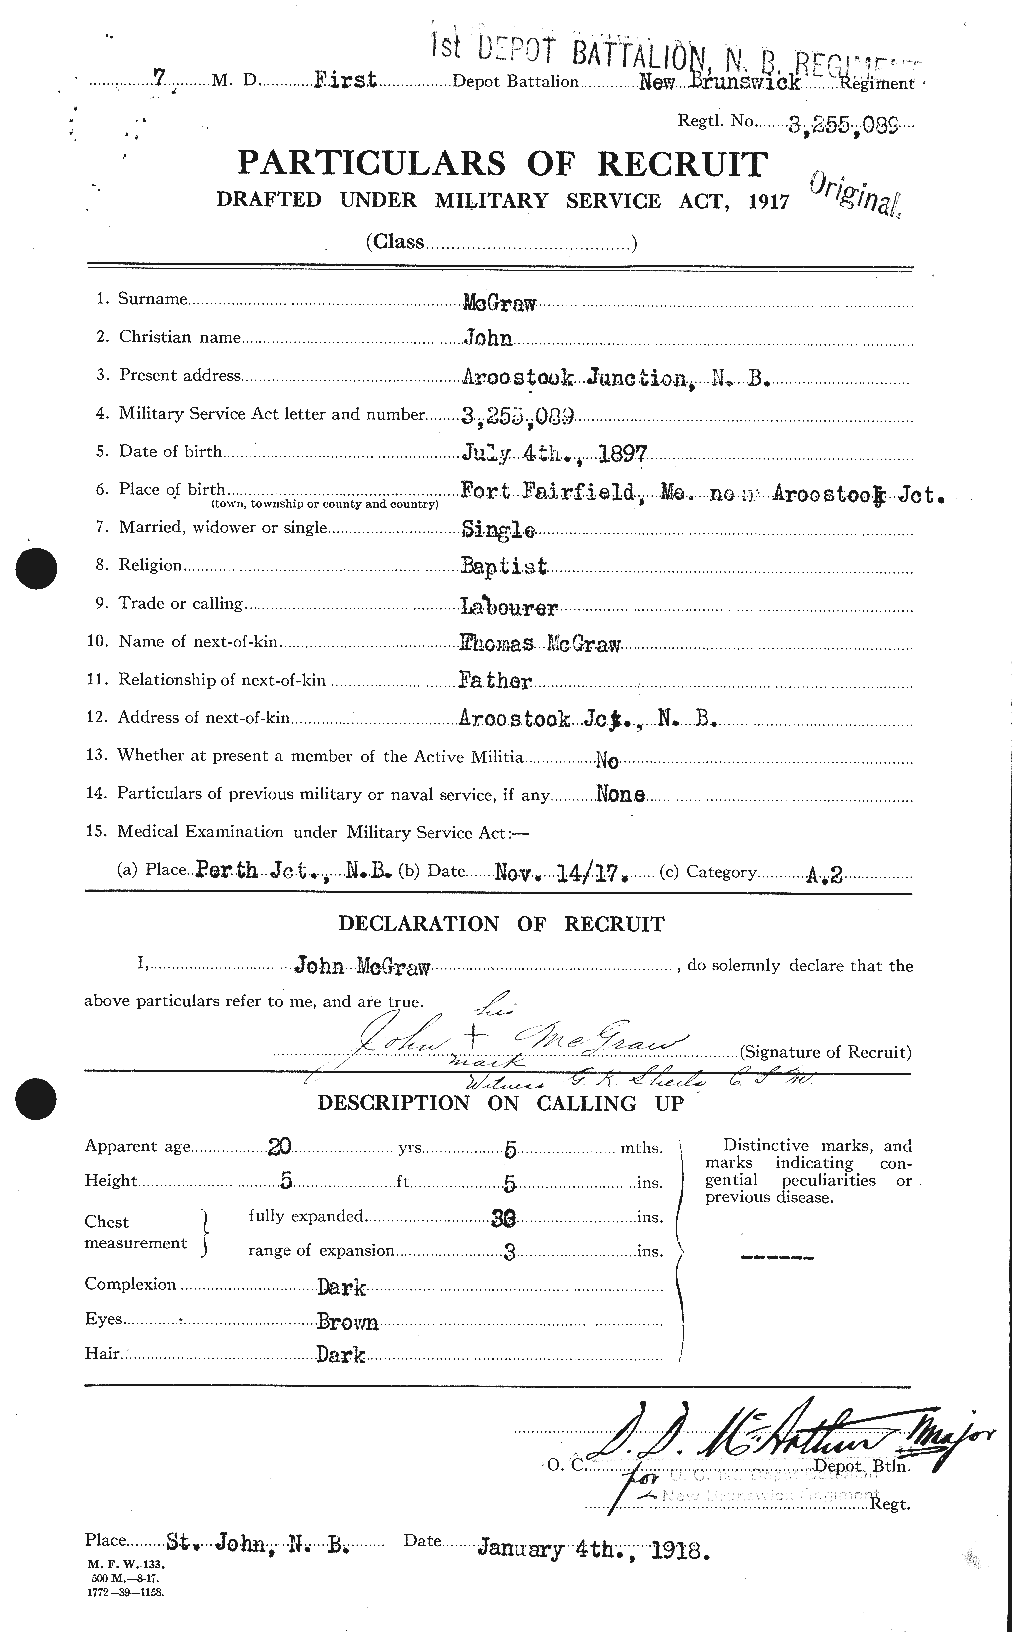 Dossiers du Personnel de la Première Guerre mondiale - CEC 523741a